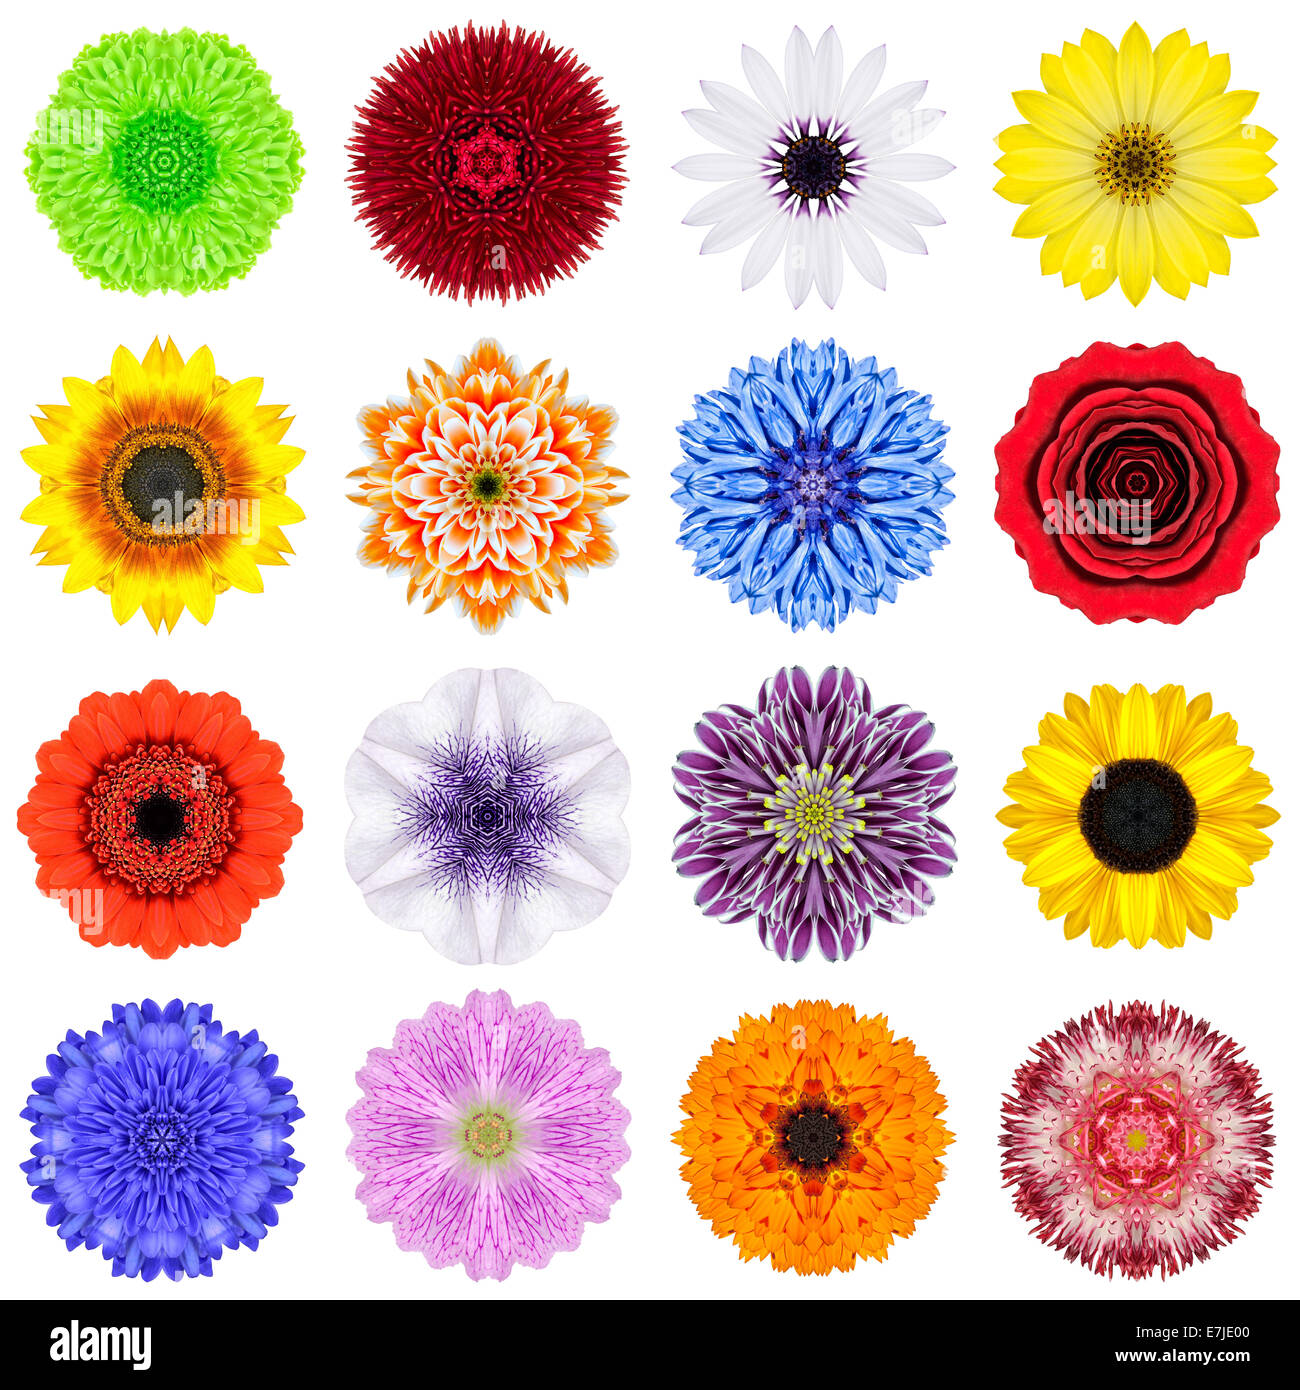 Große Sammlung von verschiedenen konzentrischen Muster Blumen. Kaleidoskopische Mandala-Muster, Isolated on White Background. Konzentrische Ro Stockfoto